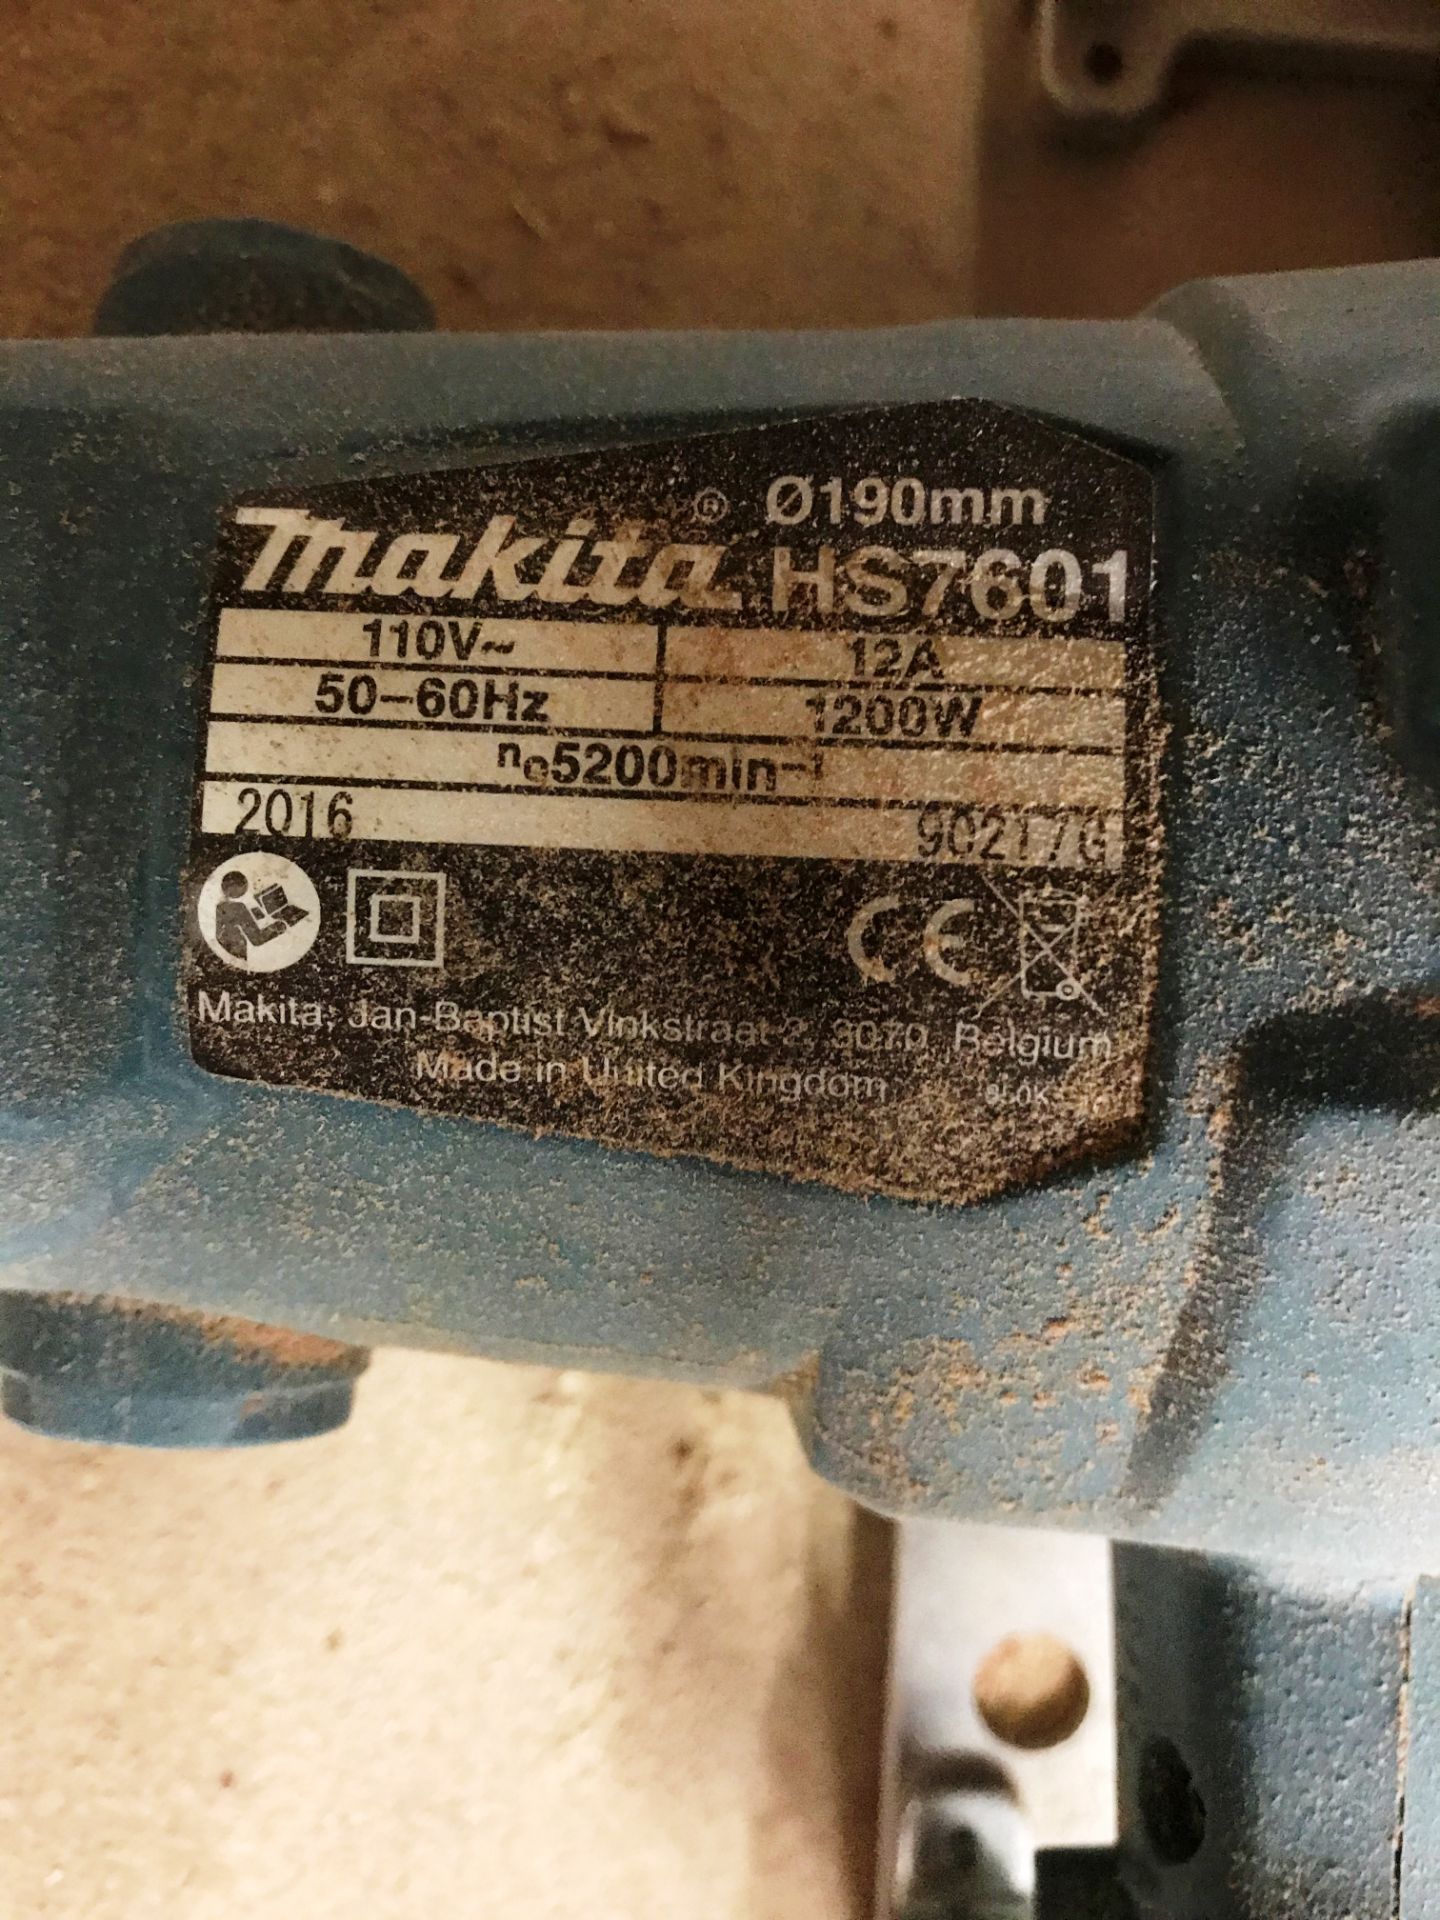 Makita HS7601 190mm Circular Saw w/ Box | 110V | YOM: 2016 - Image 2 of 3